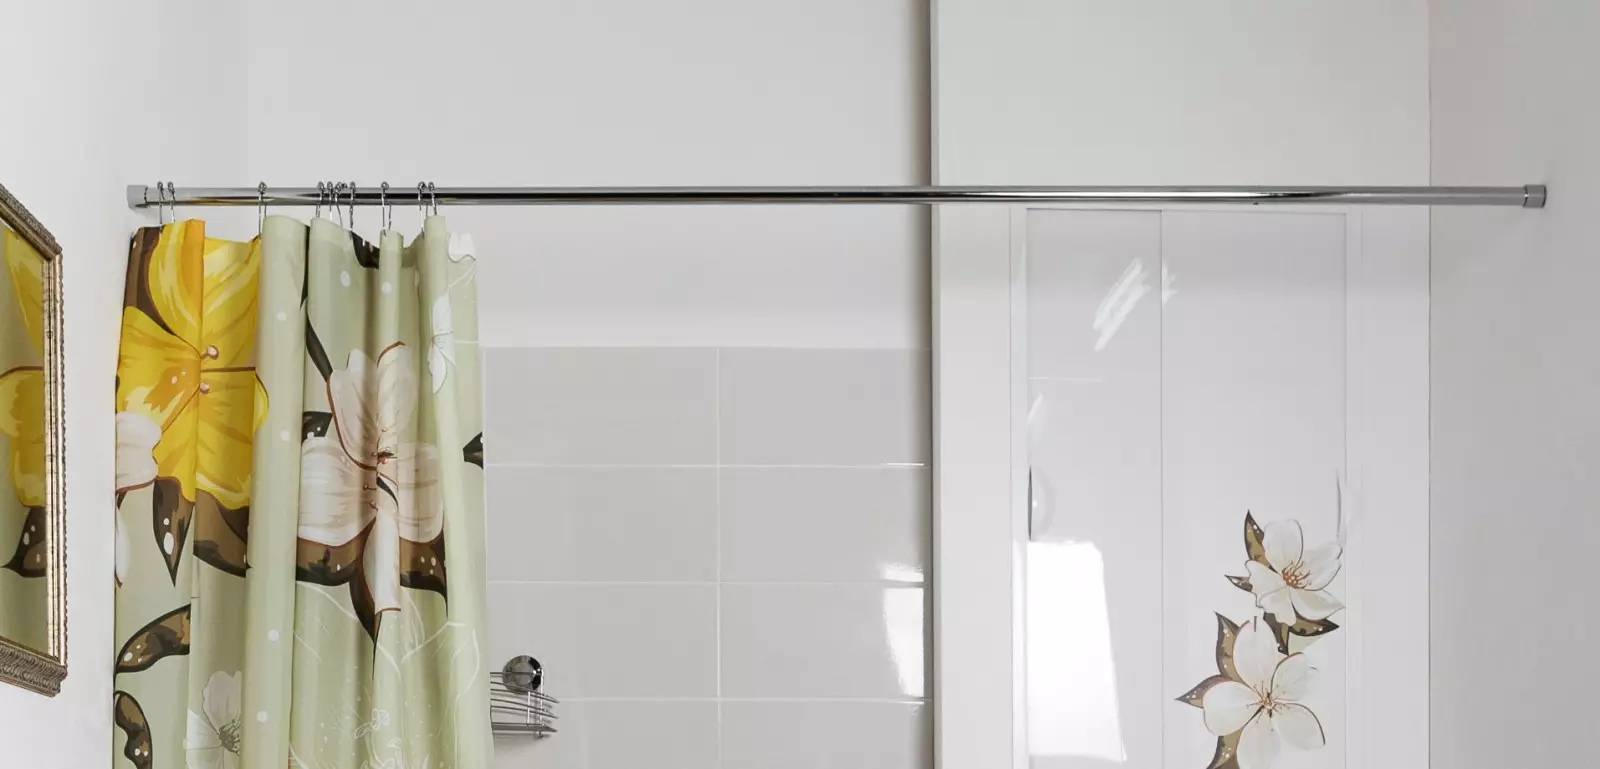 स्नानगृह, पडदेसाठी एम-आकाराचे रॉड्स, पडदे आणि लवचिक धारकांसाठी टेलीस्कोपिक स्टिक, ओव्हल बाथसाठी पडदेसाठी फास्टनिंग निवडा 10049_33